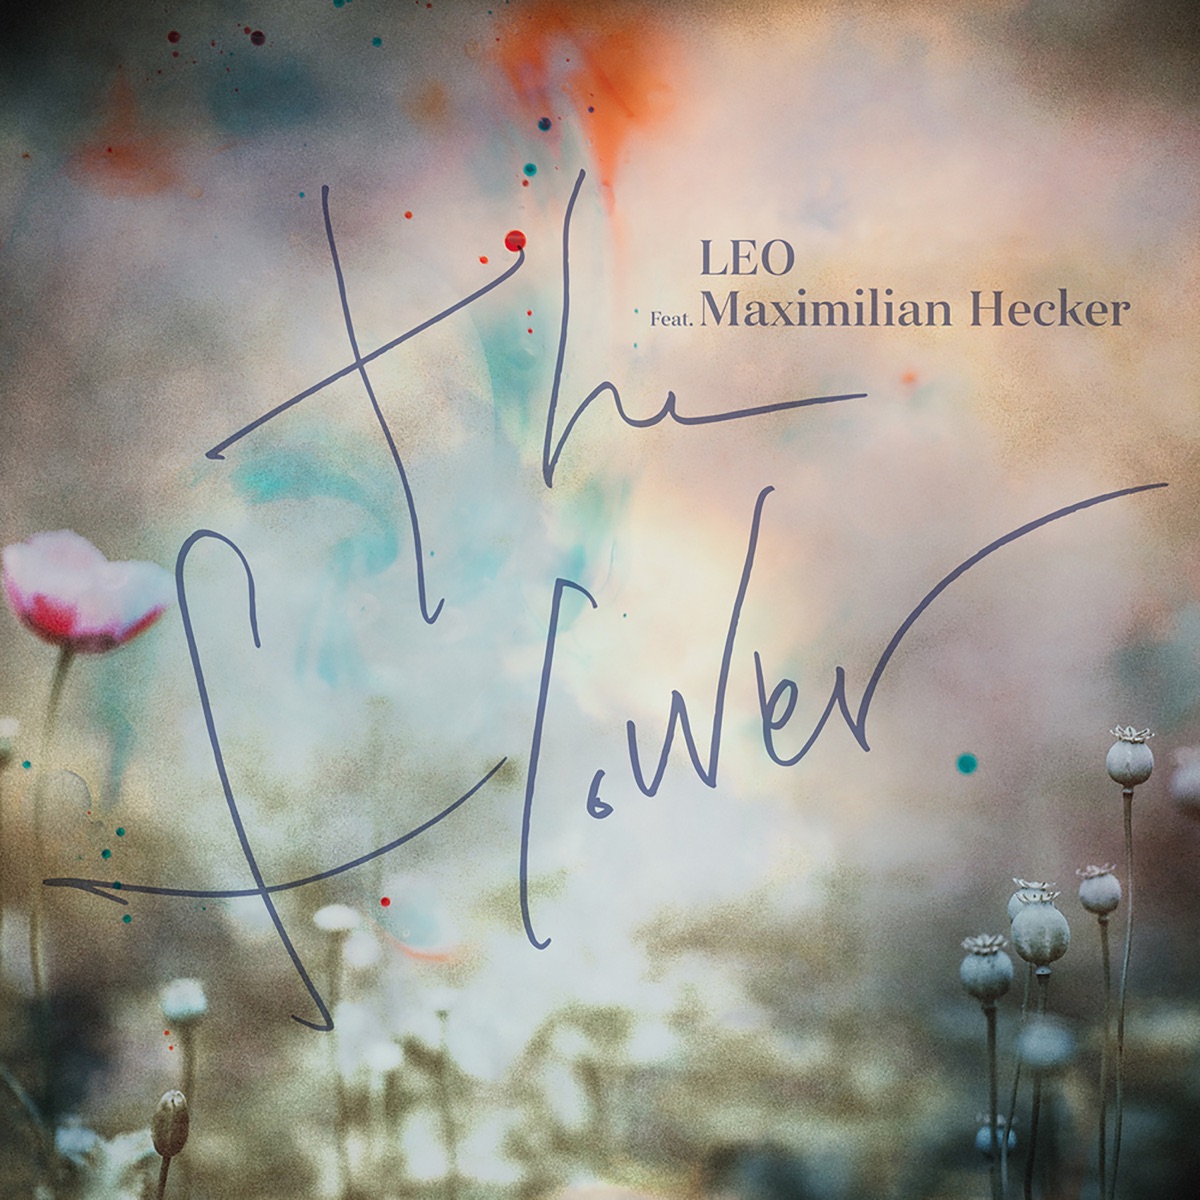 LEO (VIXX) – The Flower (feat. Maximilian Hecker) – Single